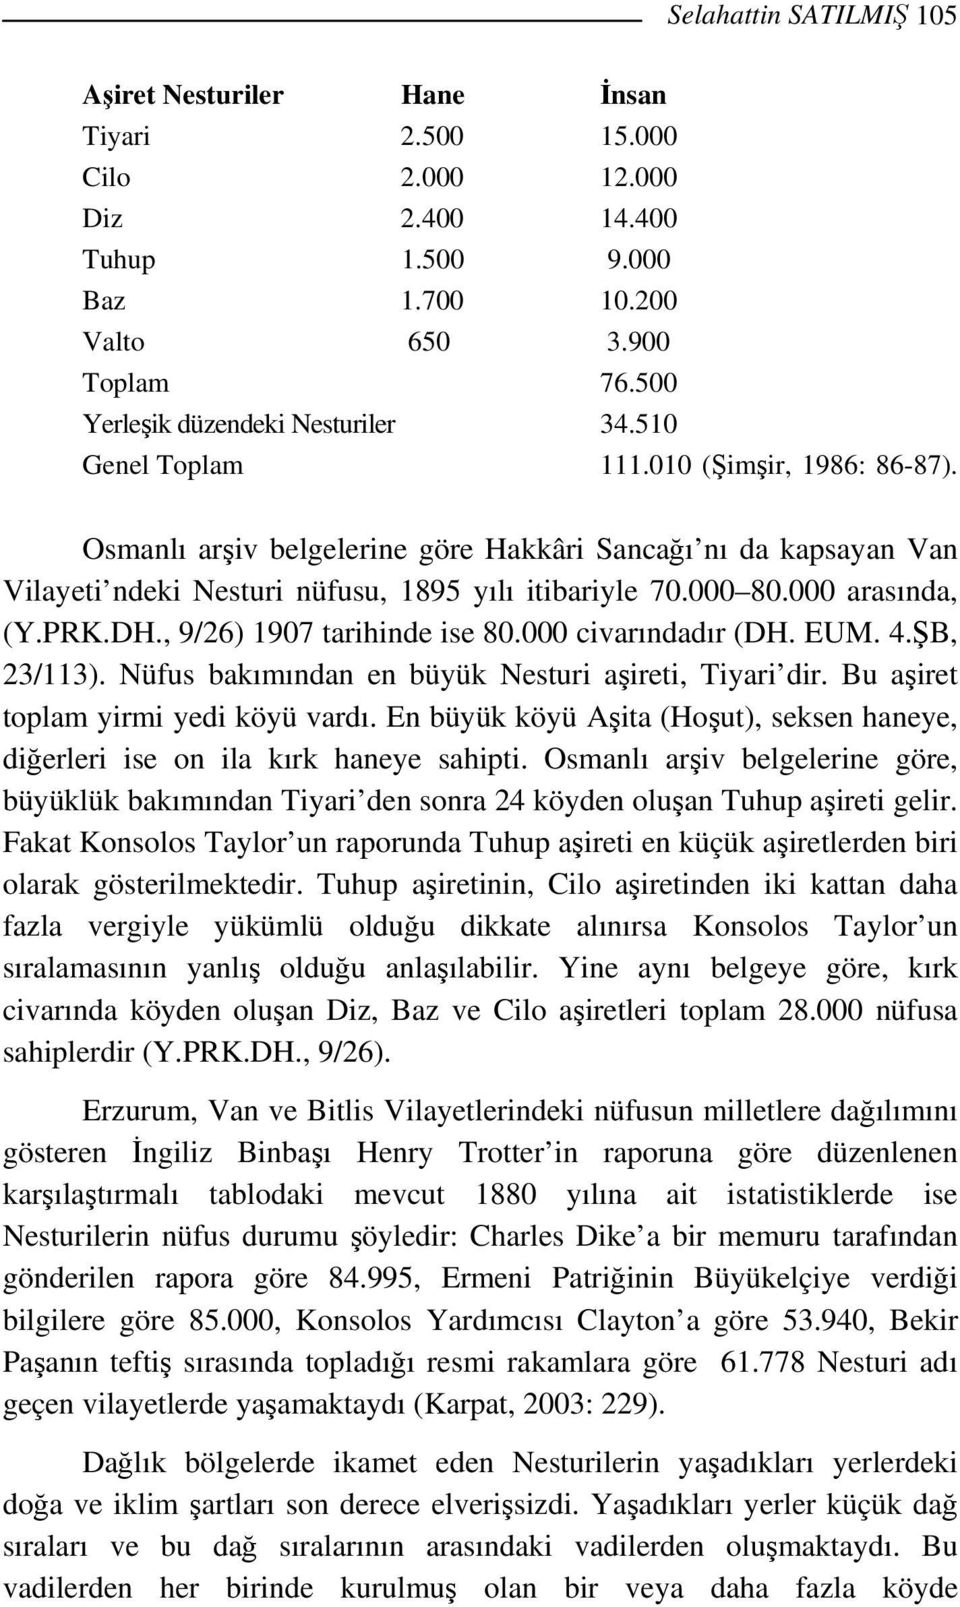 Osmanlı arşiv belgelerine göre Hakkâri Sancağı nı da kapsayan Van Vilayeti ndeki Nesturi nüfusu, 1895 yılı itibariyle 70.000 80.000 arasında, (Y.PRK.DH., 9/26) 1907 tarihinde ise 80.